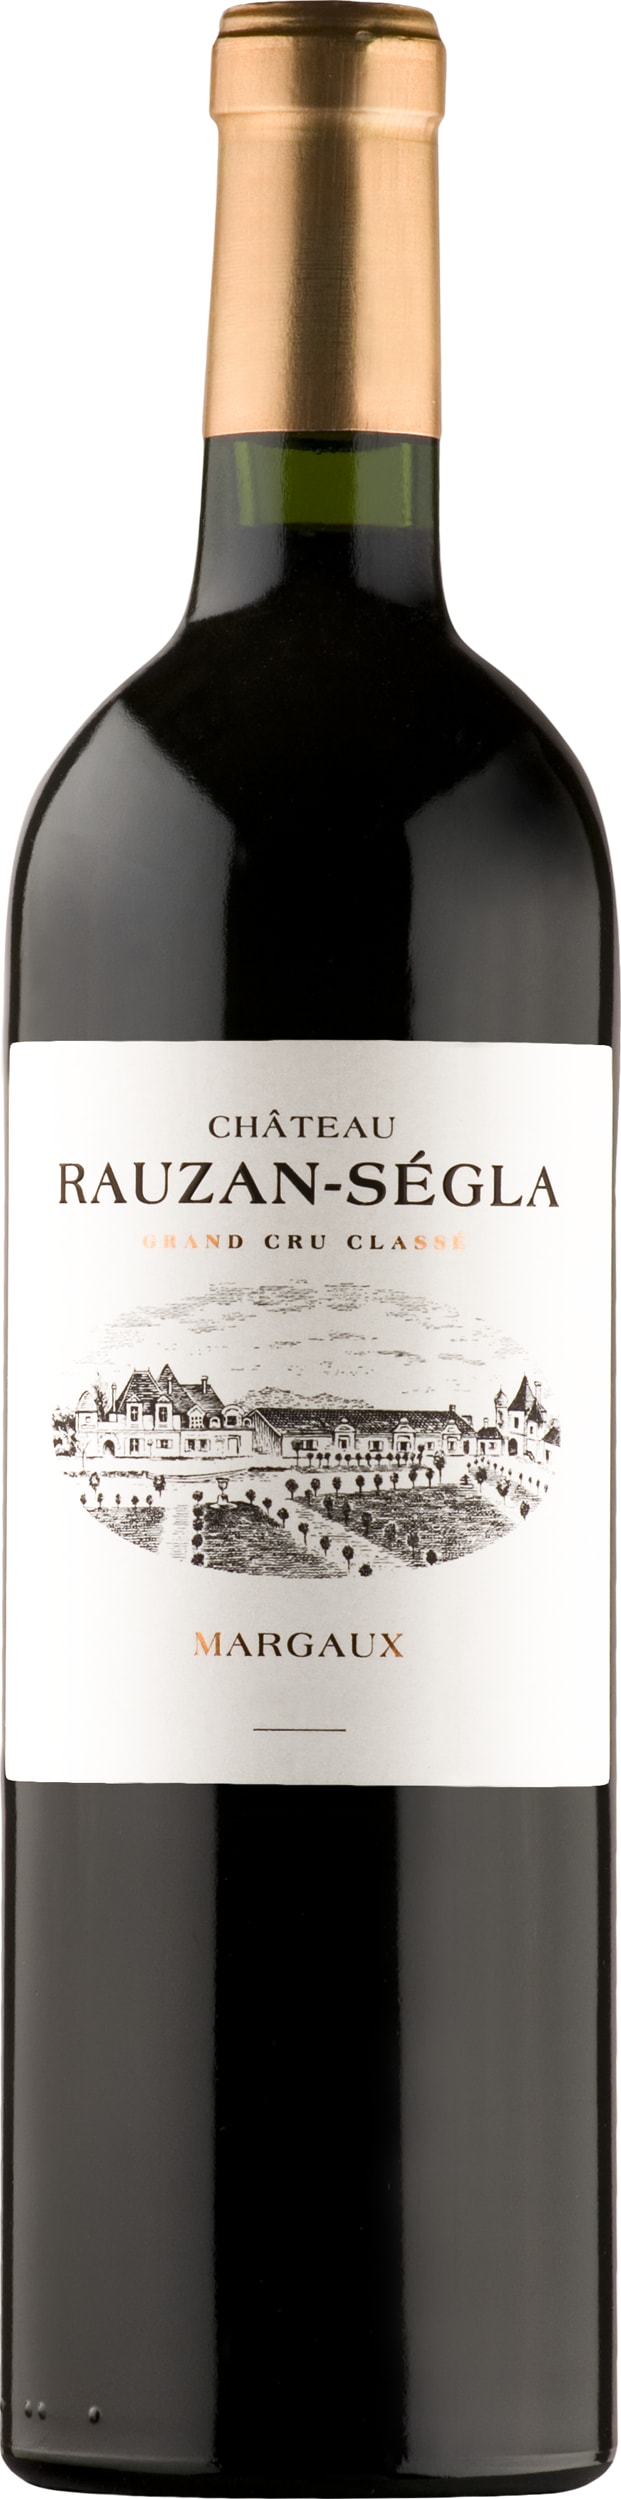 Chateau Rauzan-Segla Margaux Grand Cru Classe 2014 75cl - Buy Chateau Rauzan-Segla Wines from GREAT WINES DIRECT wine shop